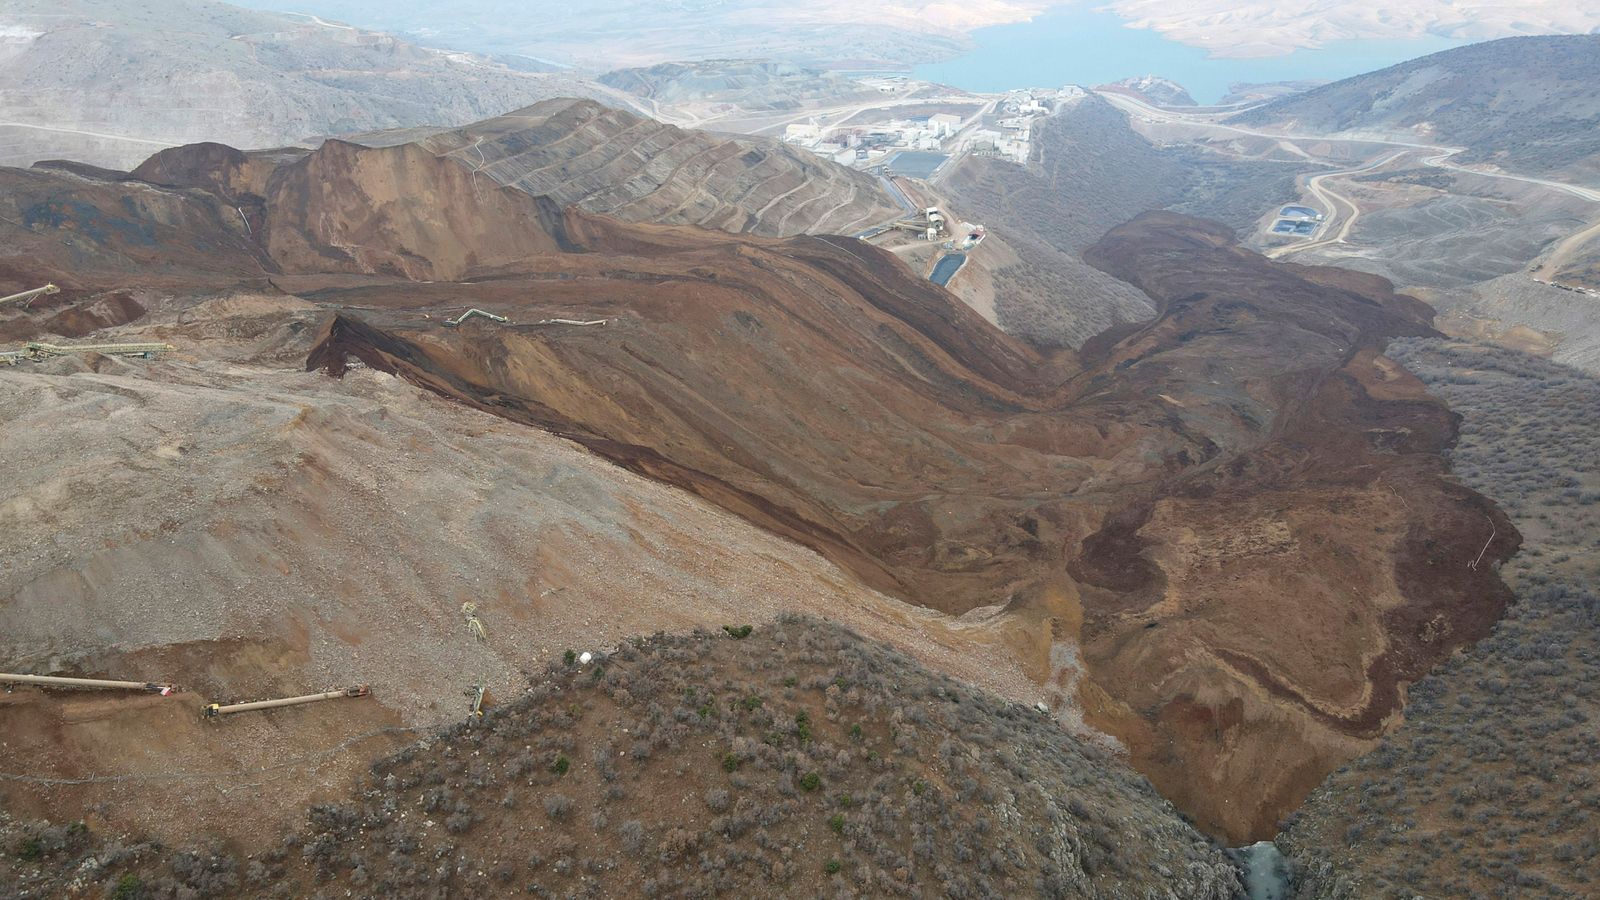 Turkey: Nine workers trapped in gold mine after landslide